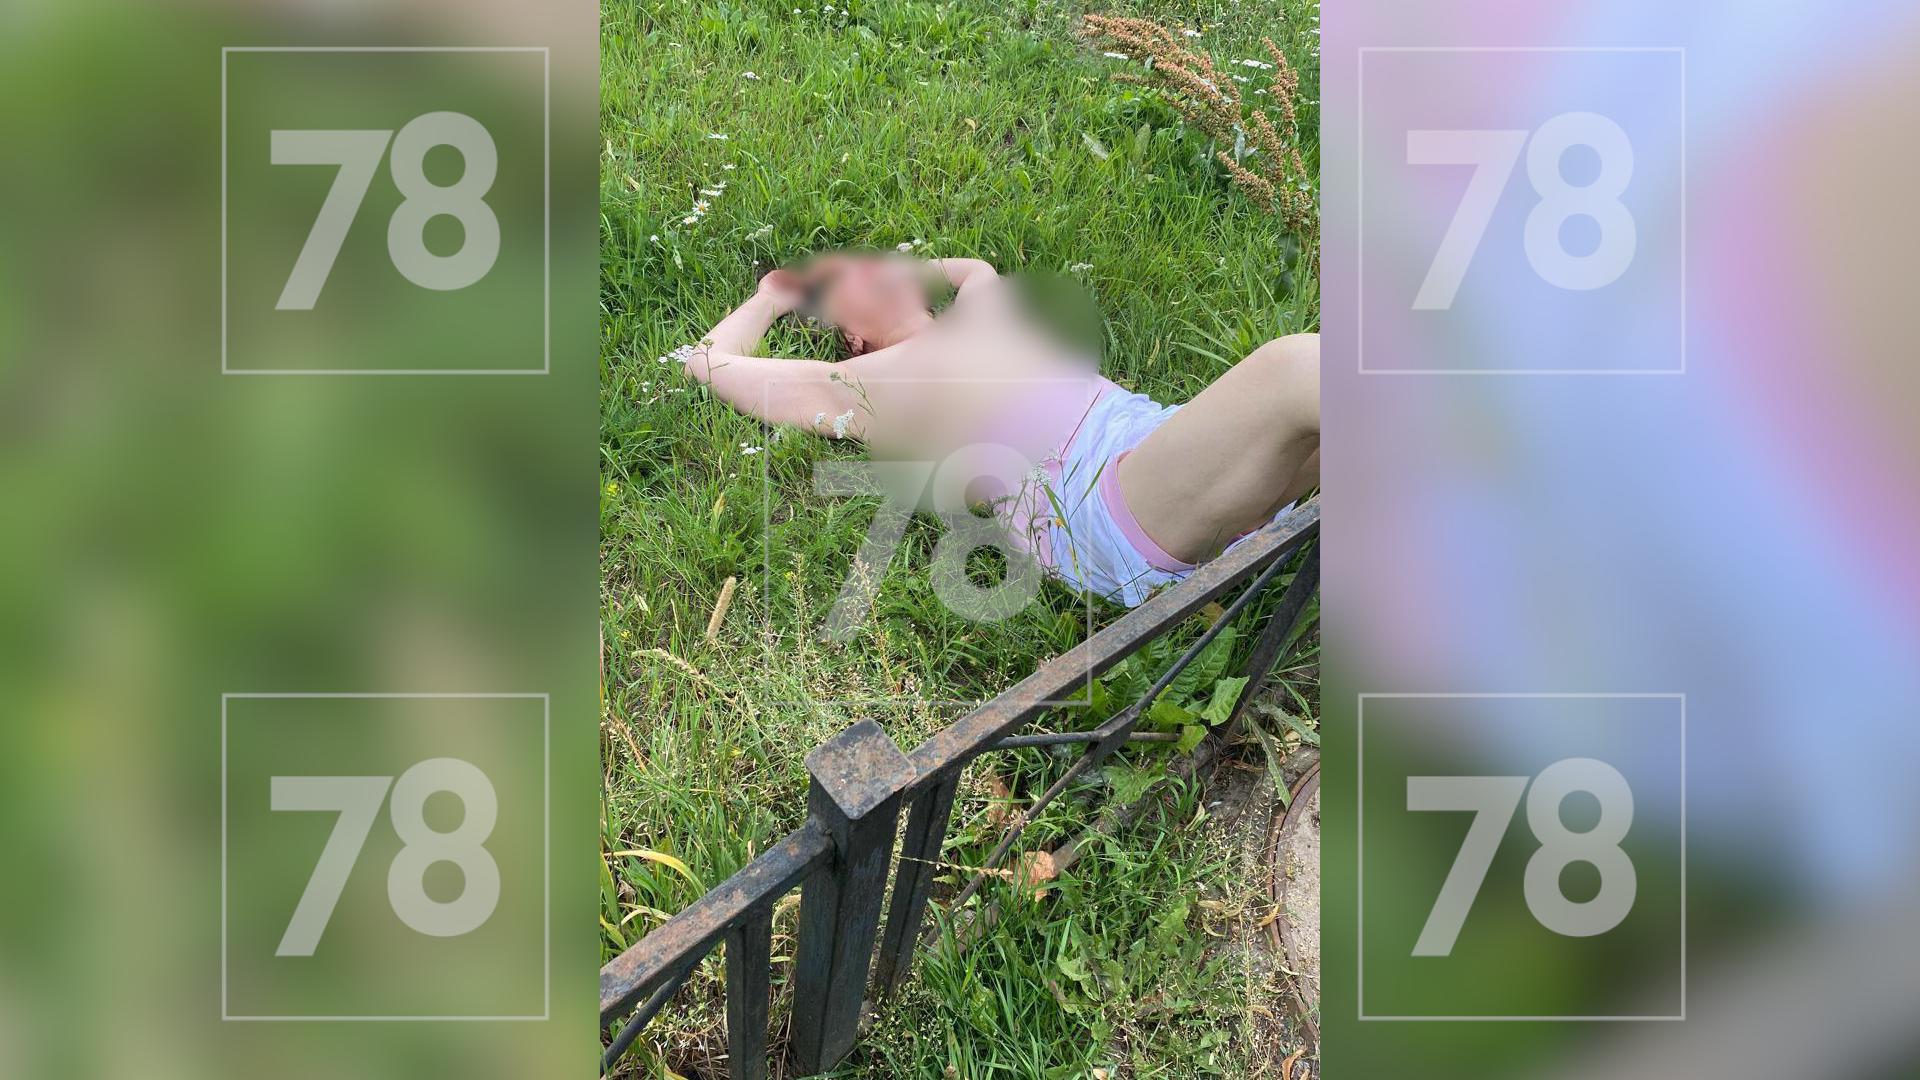 На Металлистов голая женщина пыталась проникнуть на территорию детского сада